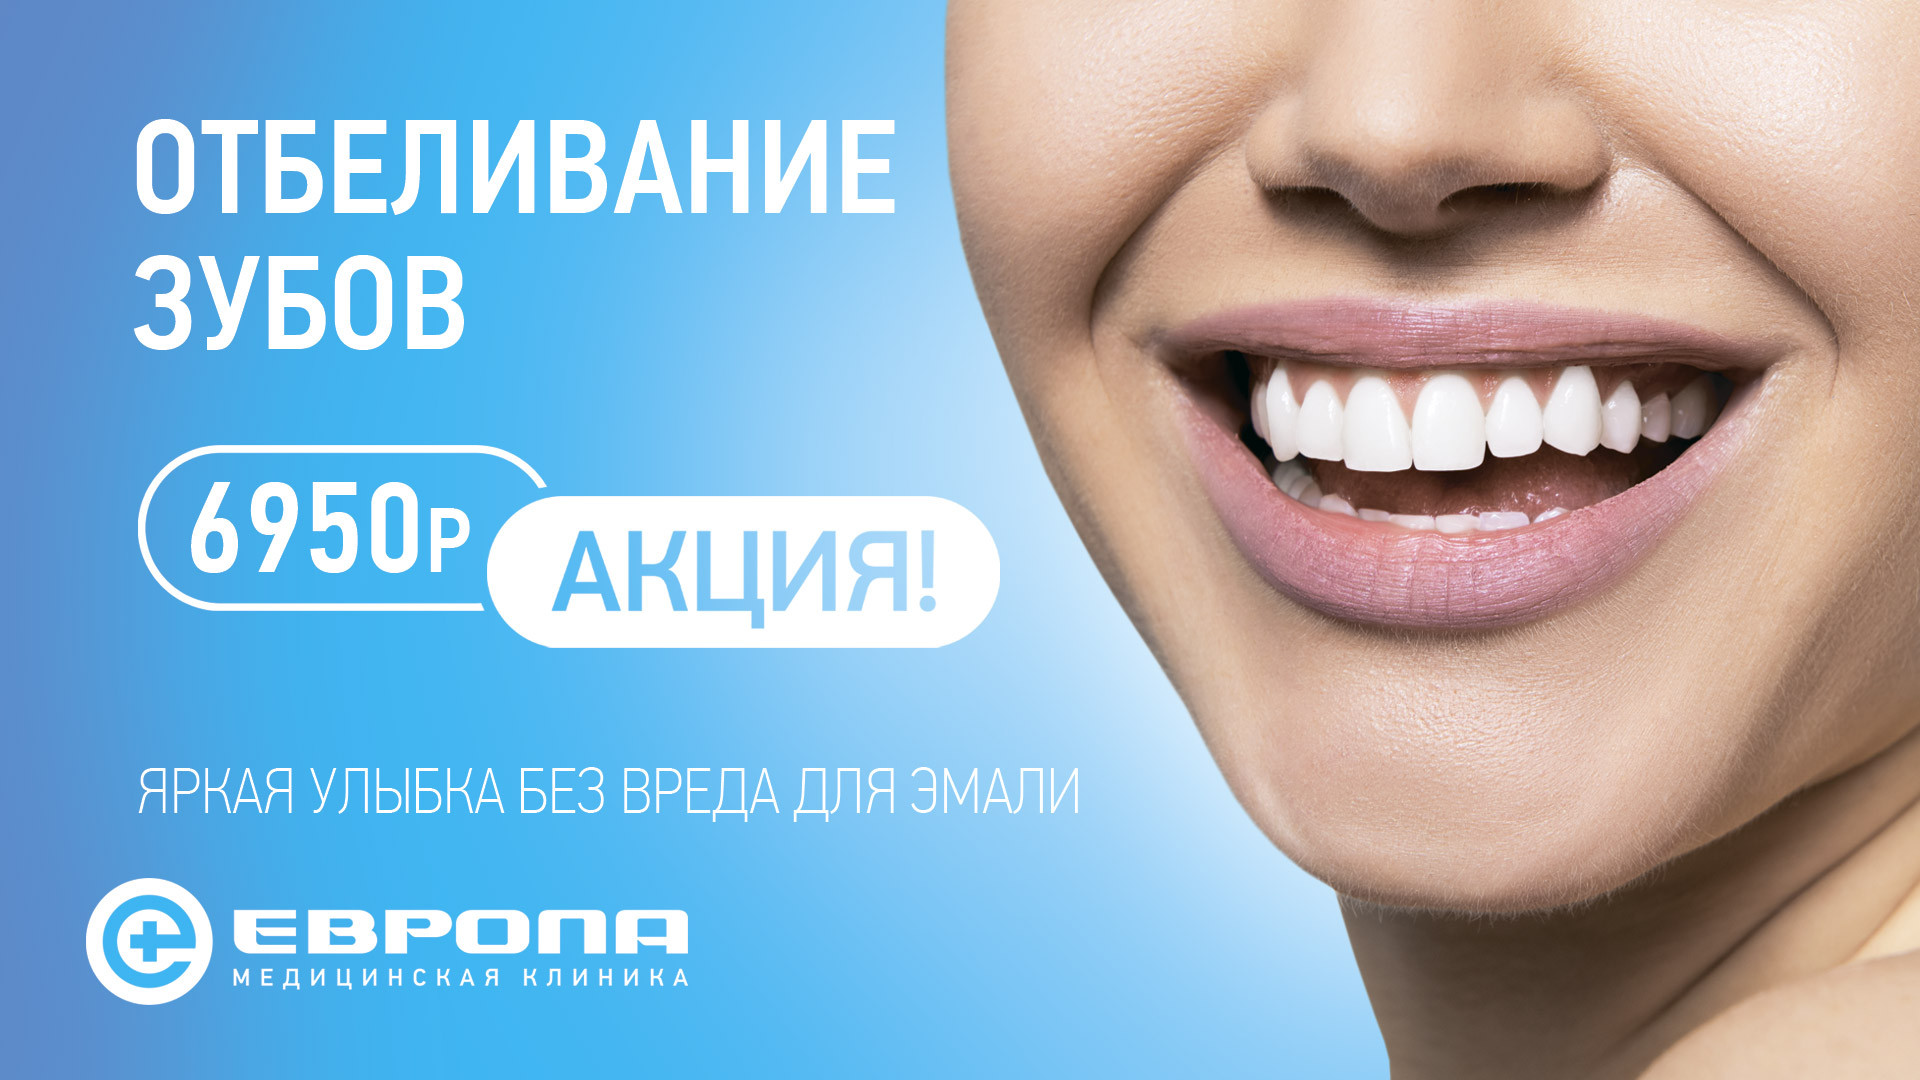 Реклама стоматологии. Девушка с красивыми зубами. Стоматология баннер. Отбеливание зубов акция.